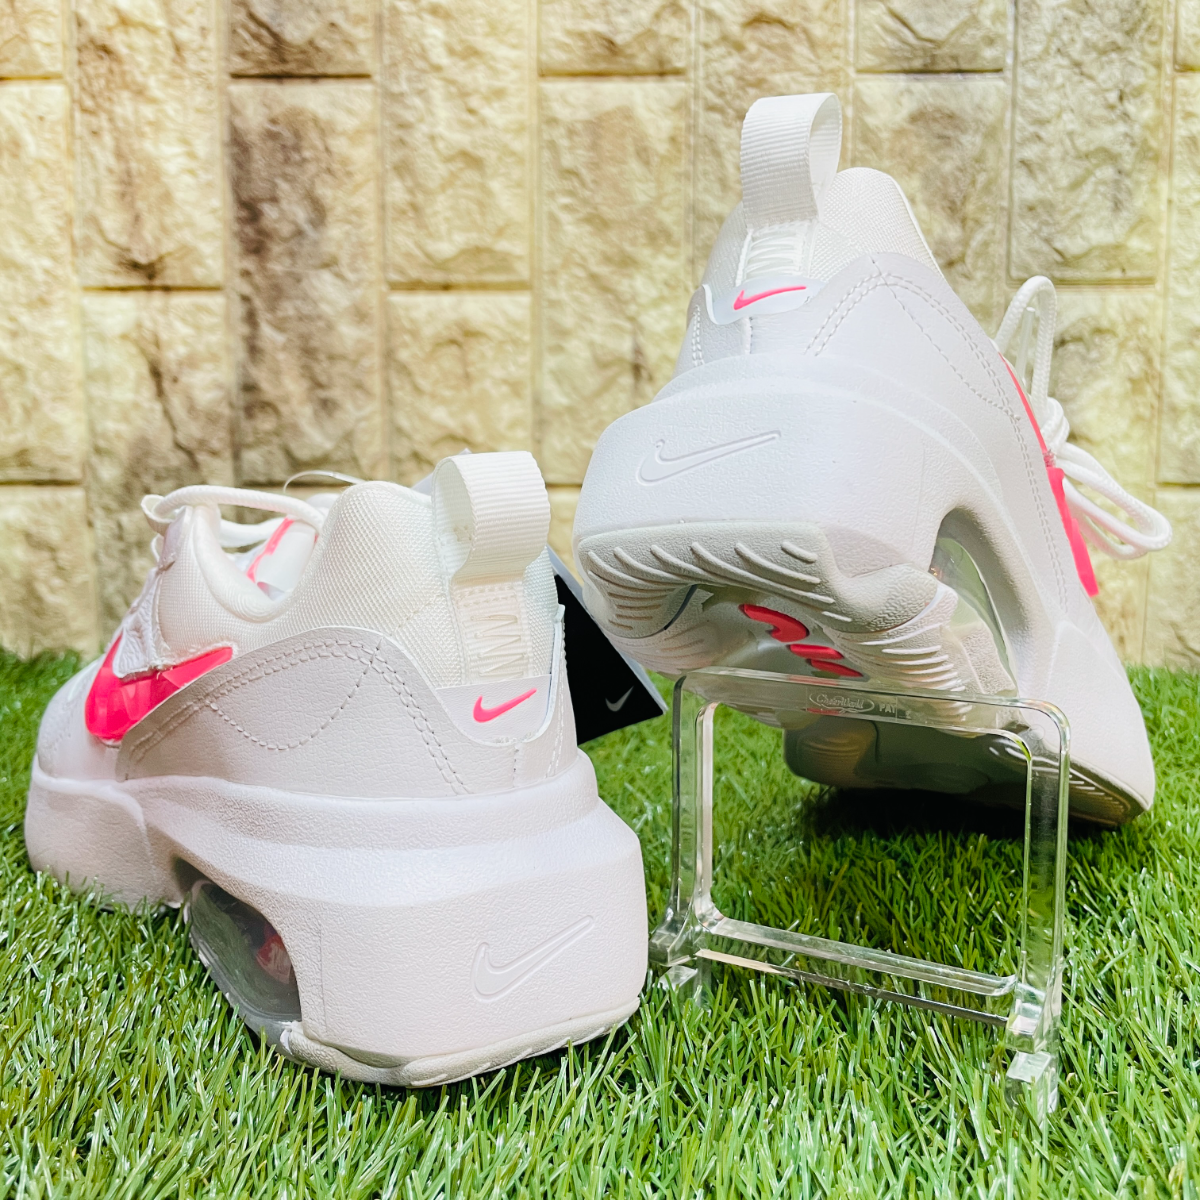 ナイキ Nike マックス Pink レディース ホワイト エアマックス 白色 Light スニーカー ピンク